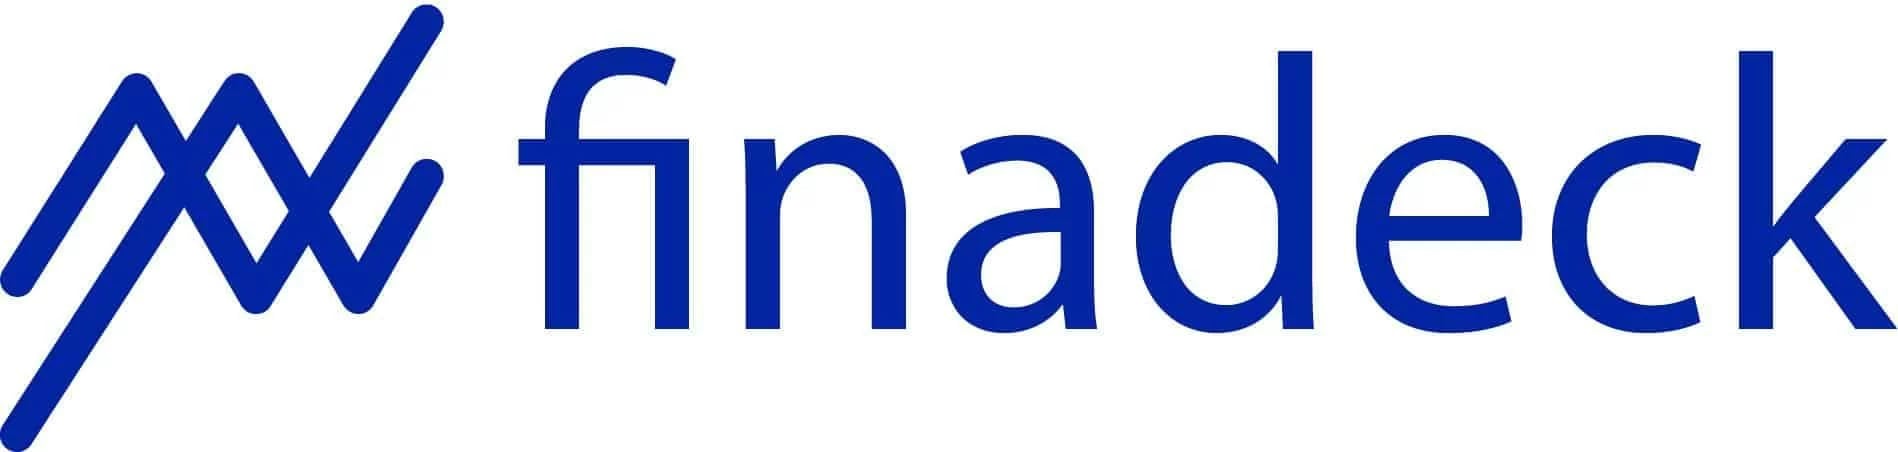 finadeck-logo